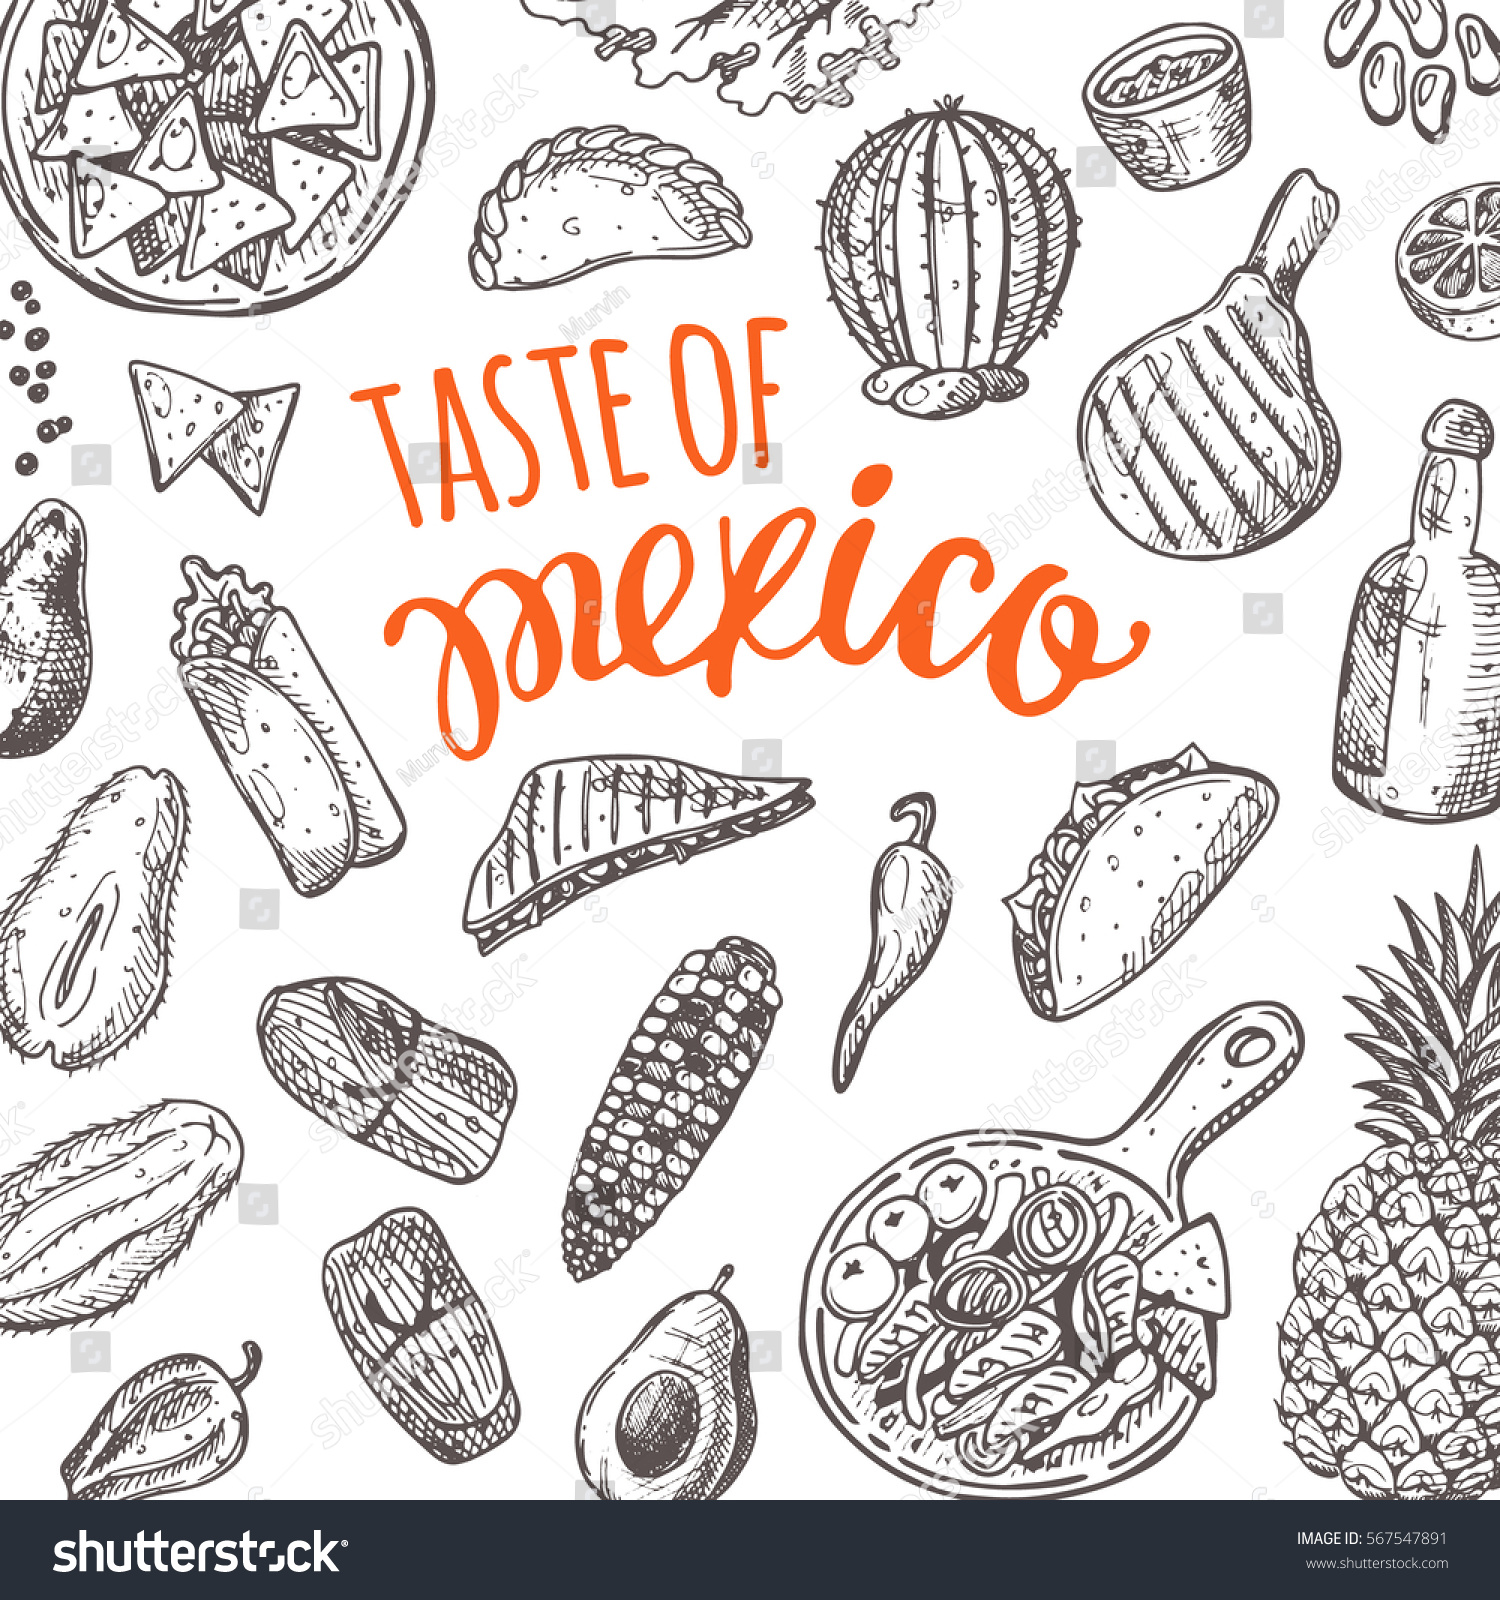 SVG of Taste of Mexico. National cuisine. Hand drawn vector illustration. Tamales, empanadas, enchilada, quesadilla, chili con carne, tacos, burrito, salsa, guacamole dip, fajitas, ceviche, chimichanga svg